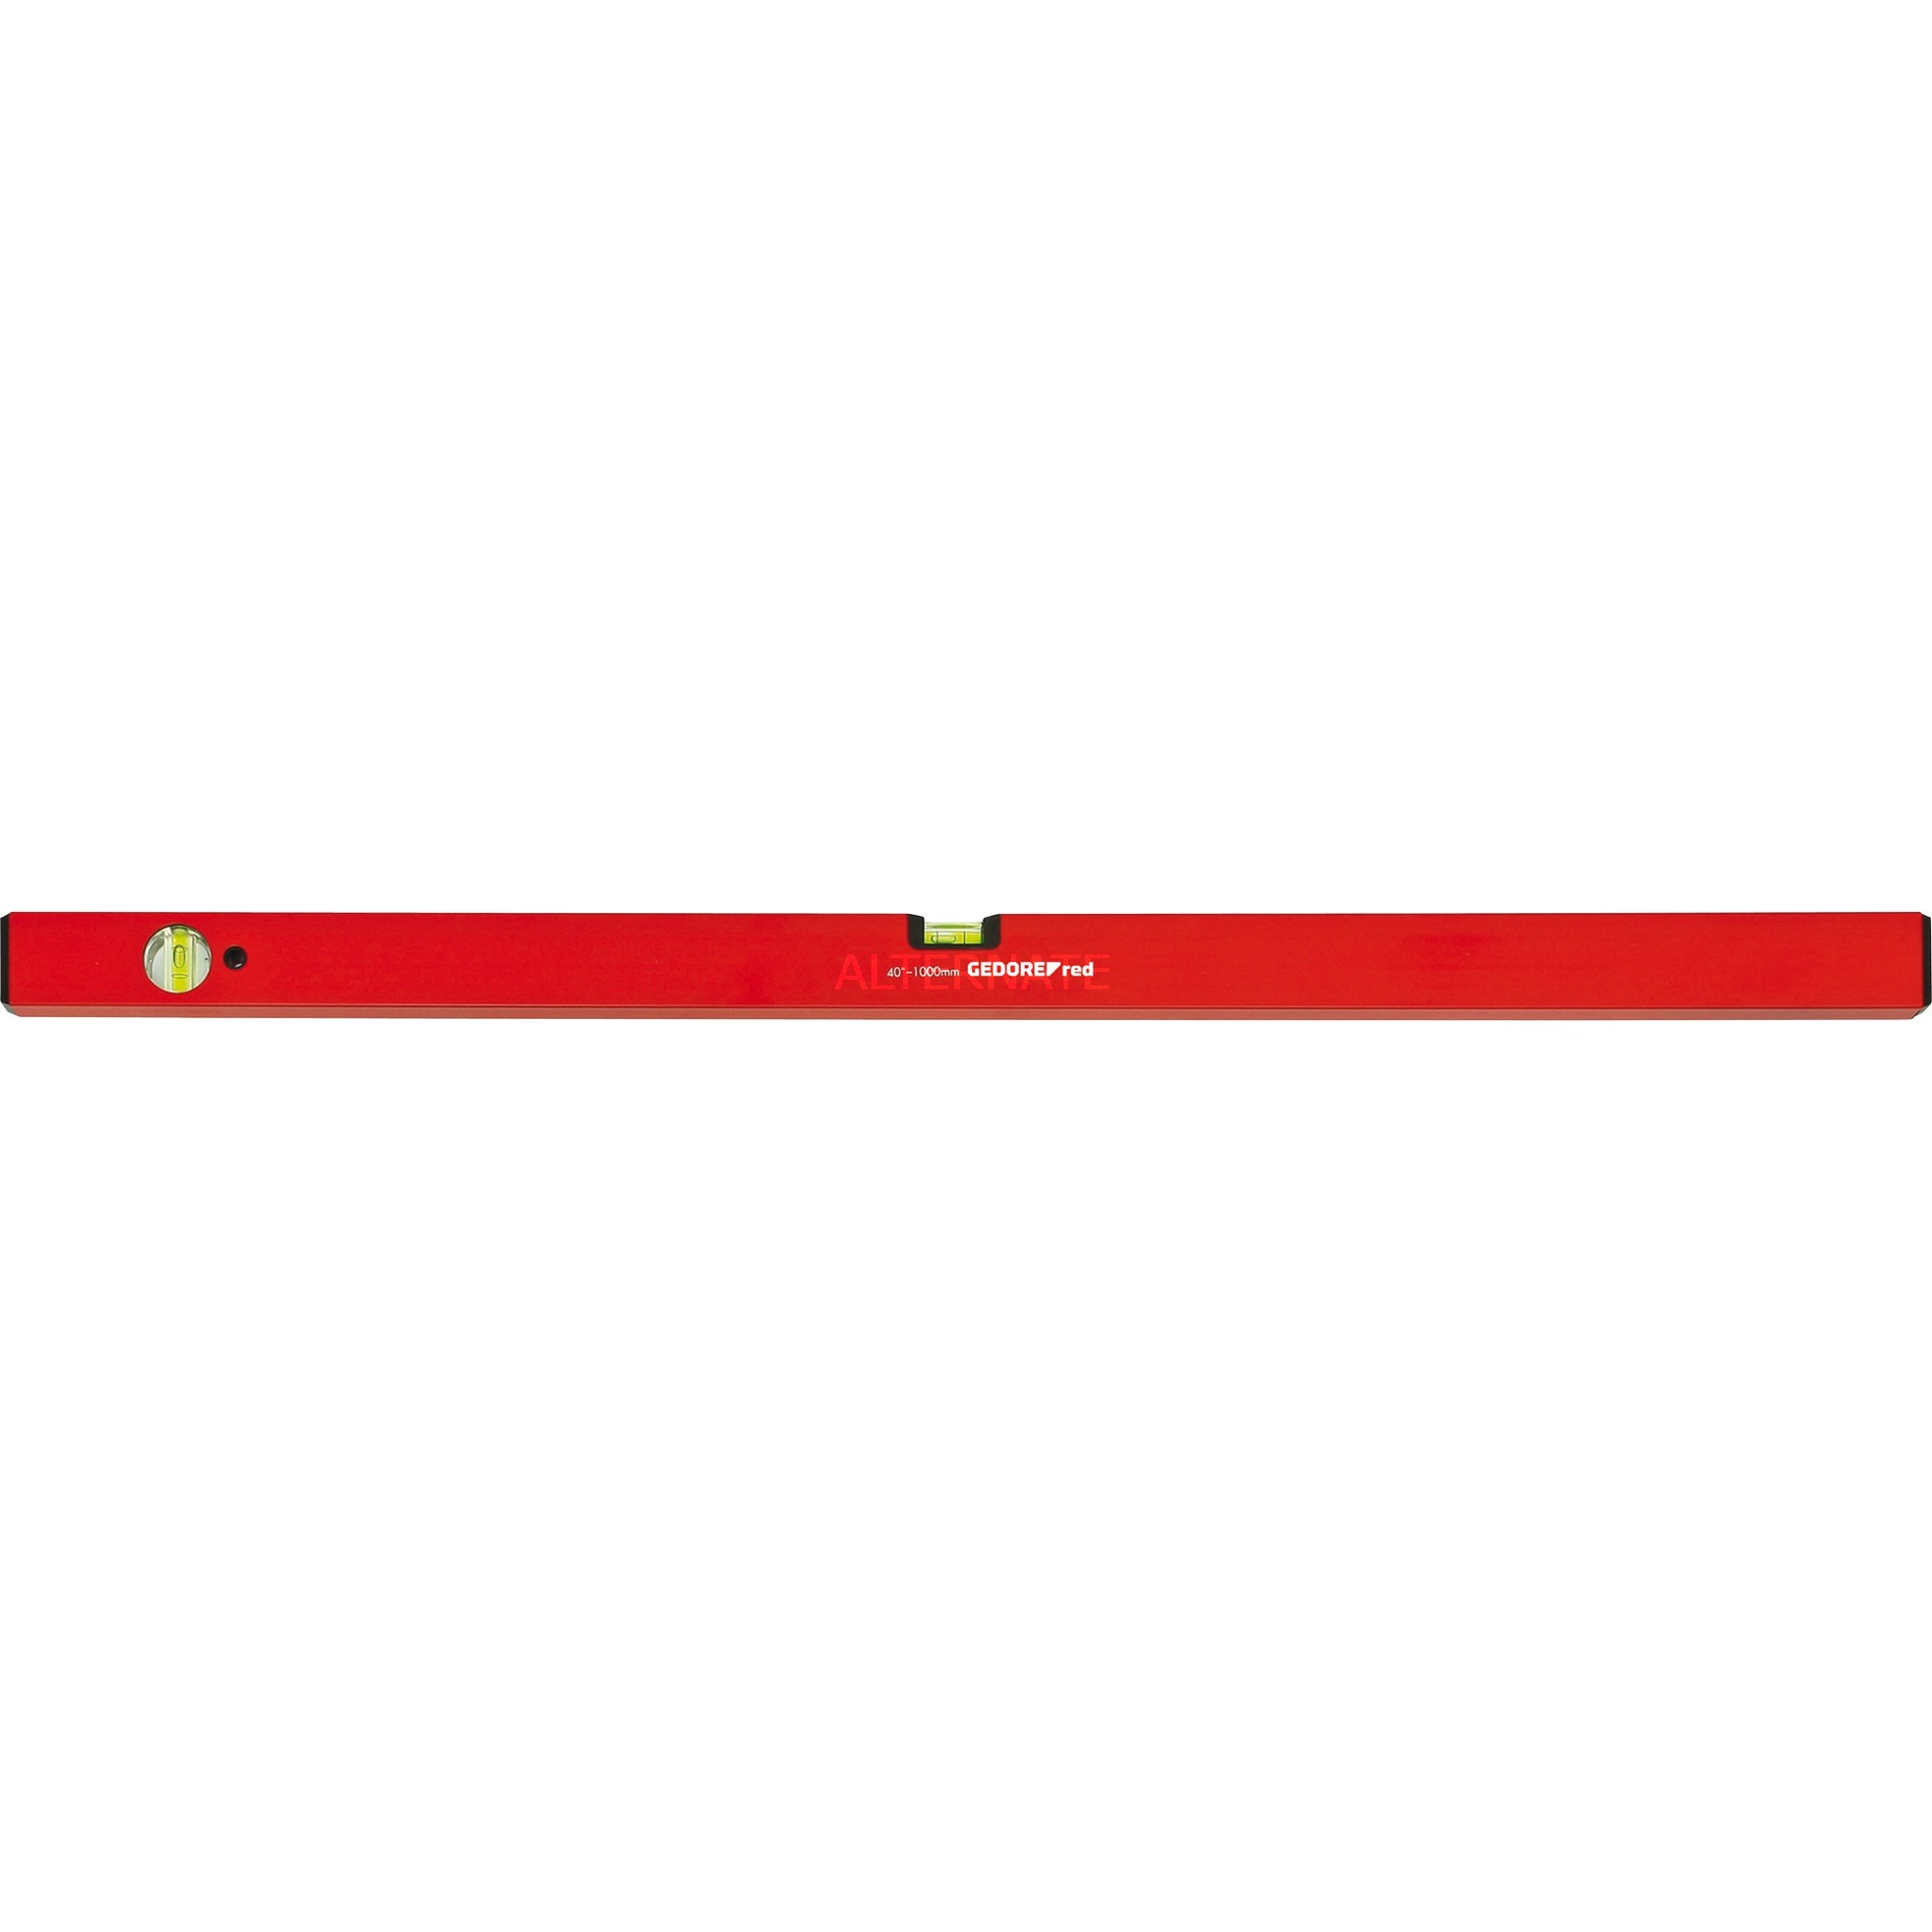 Image of Alternate - Red Wasserwaage Alu, 60cm, 2 Libellen online einkaufen bei Alternate